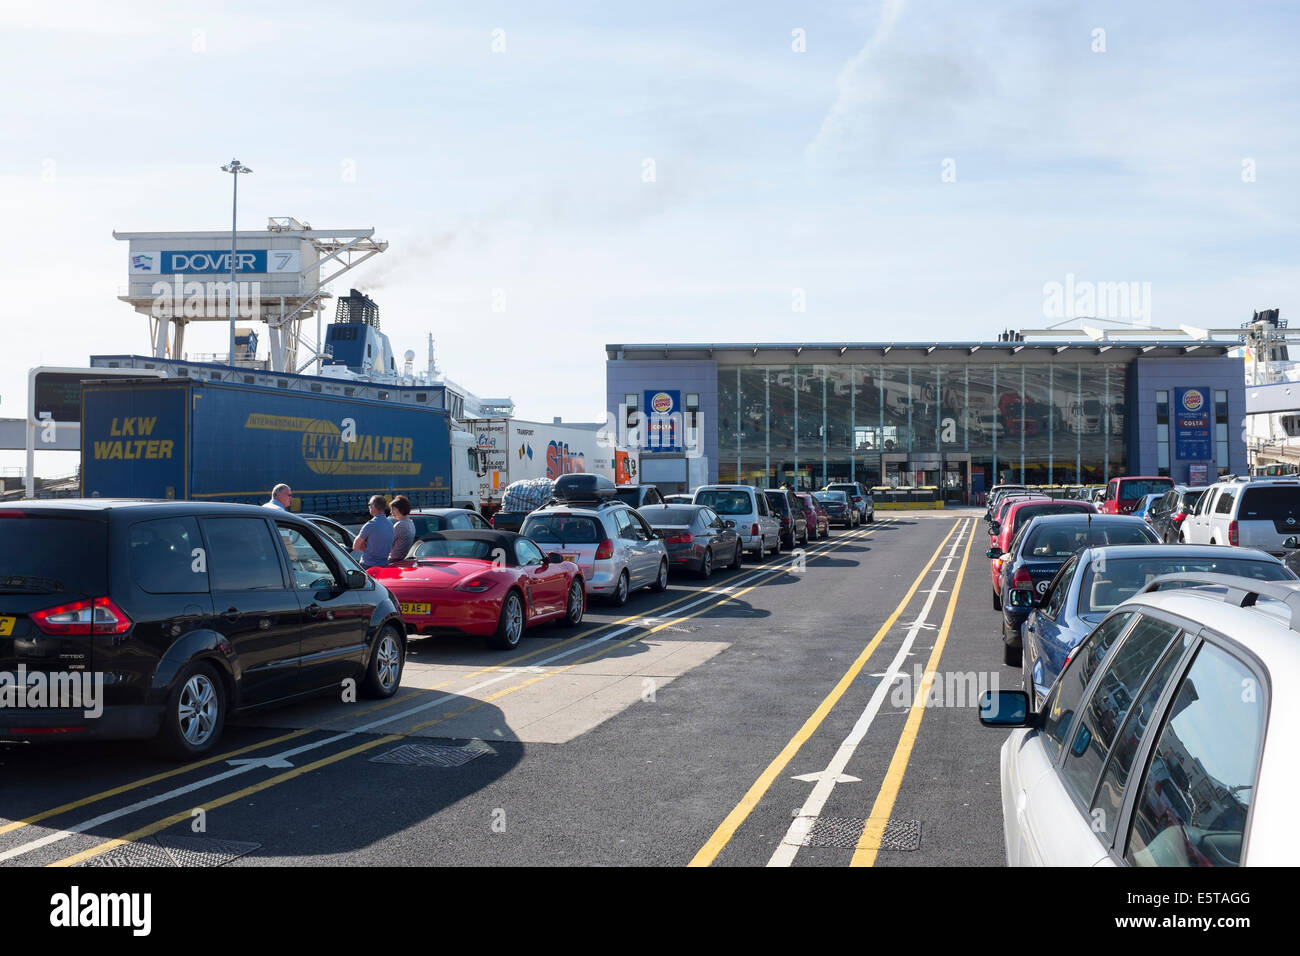 La linea di automobili in attesa di salire a bordo del traghetto nel porto di Dover, Regno Unito Foto Stock